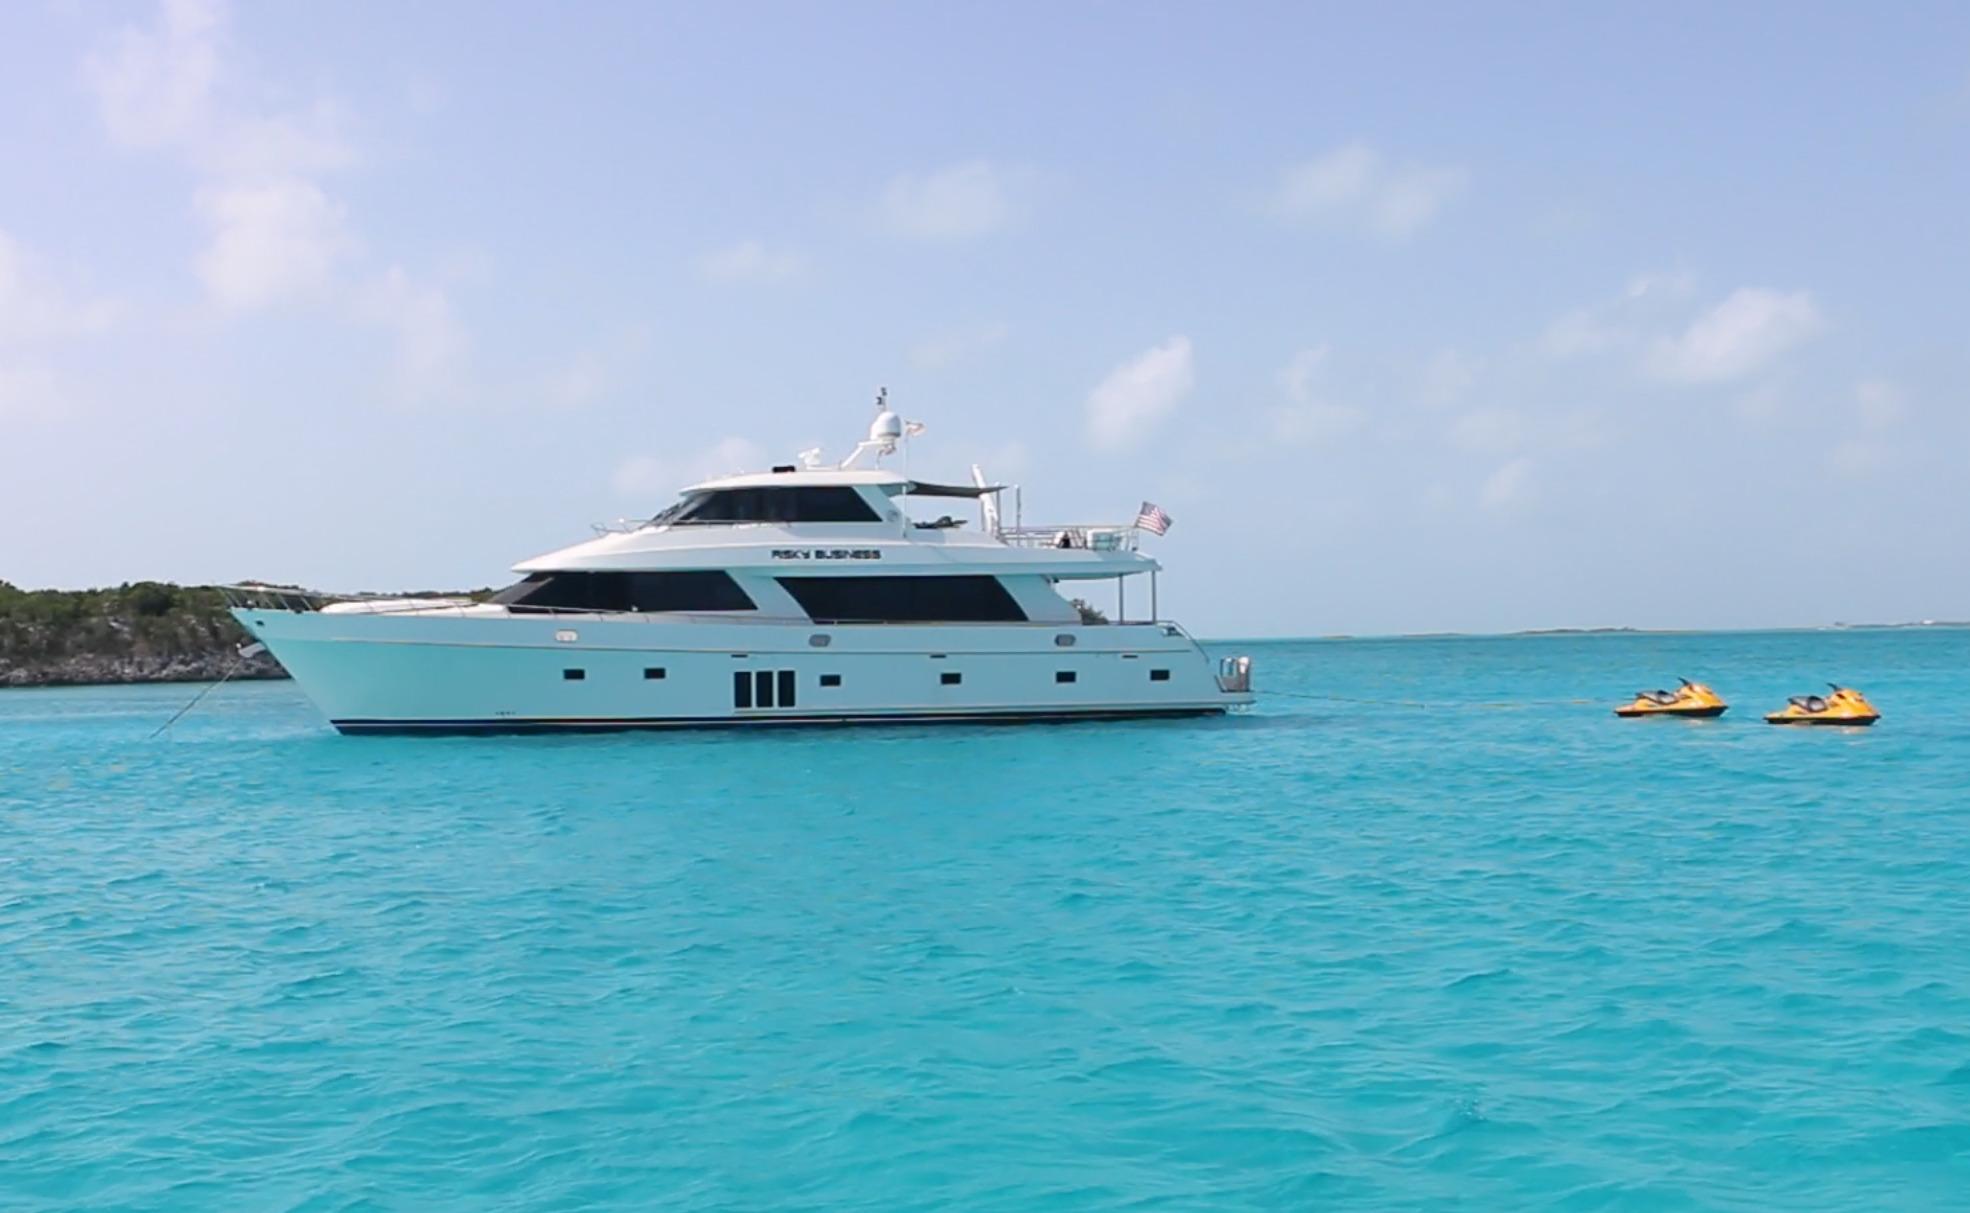 Aura Yacht Photos Pics Bahamas at Anchor